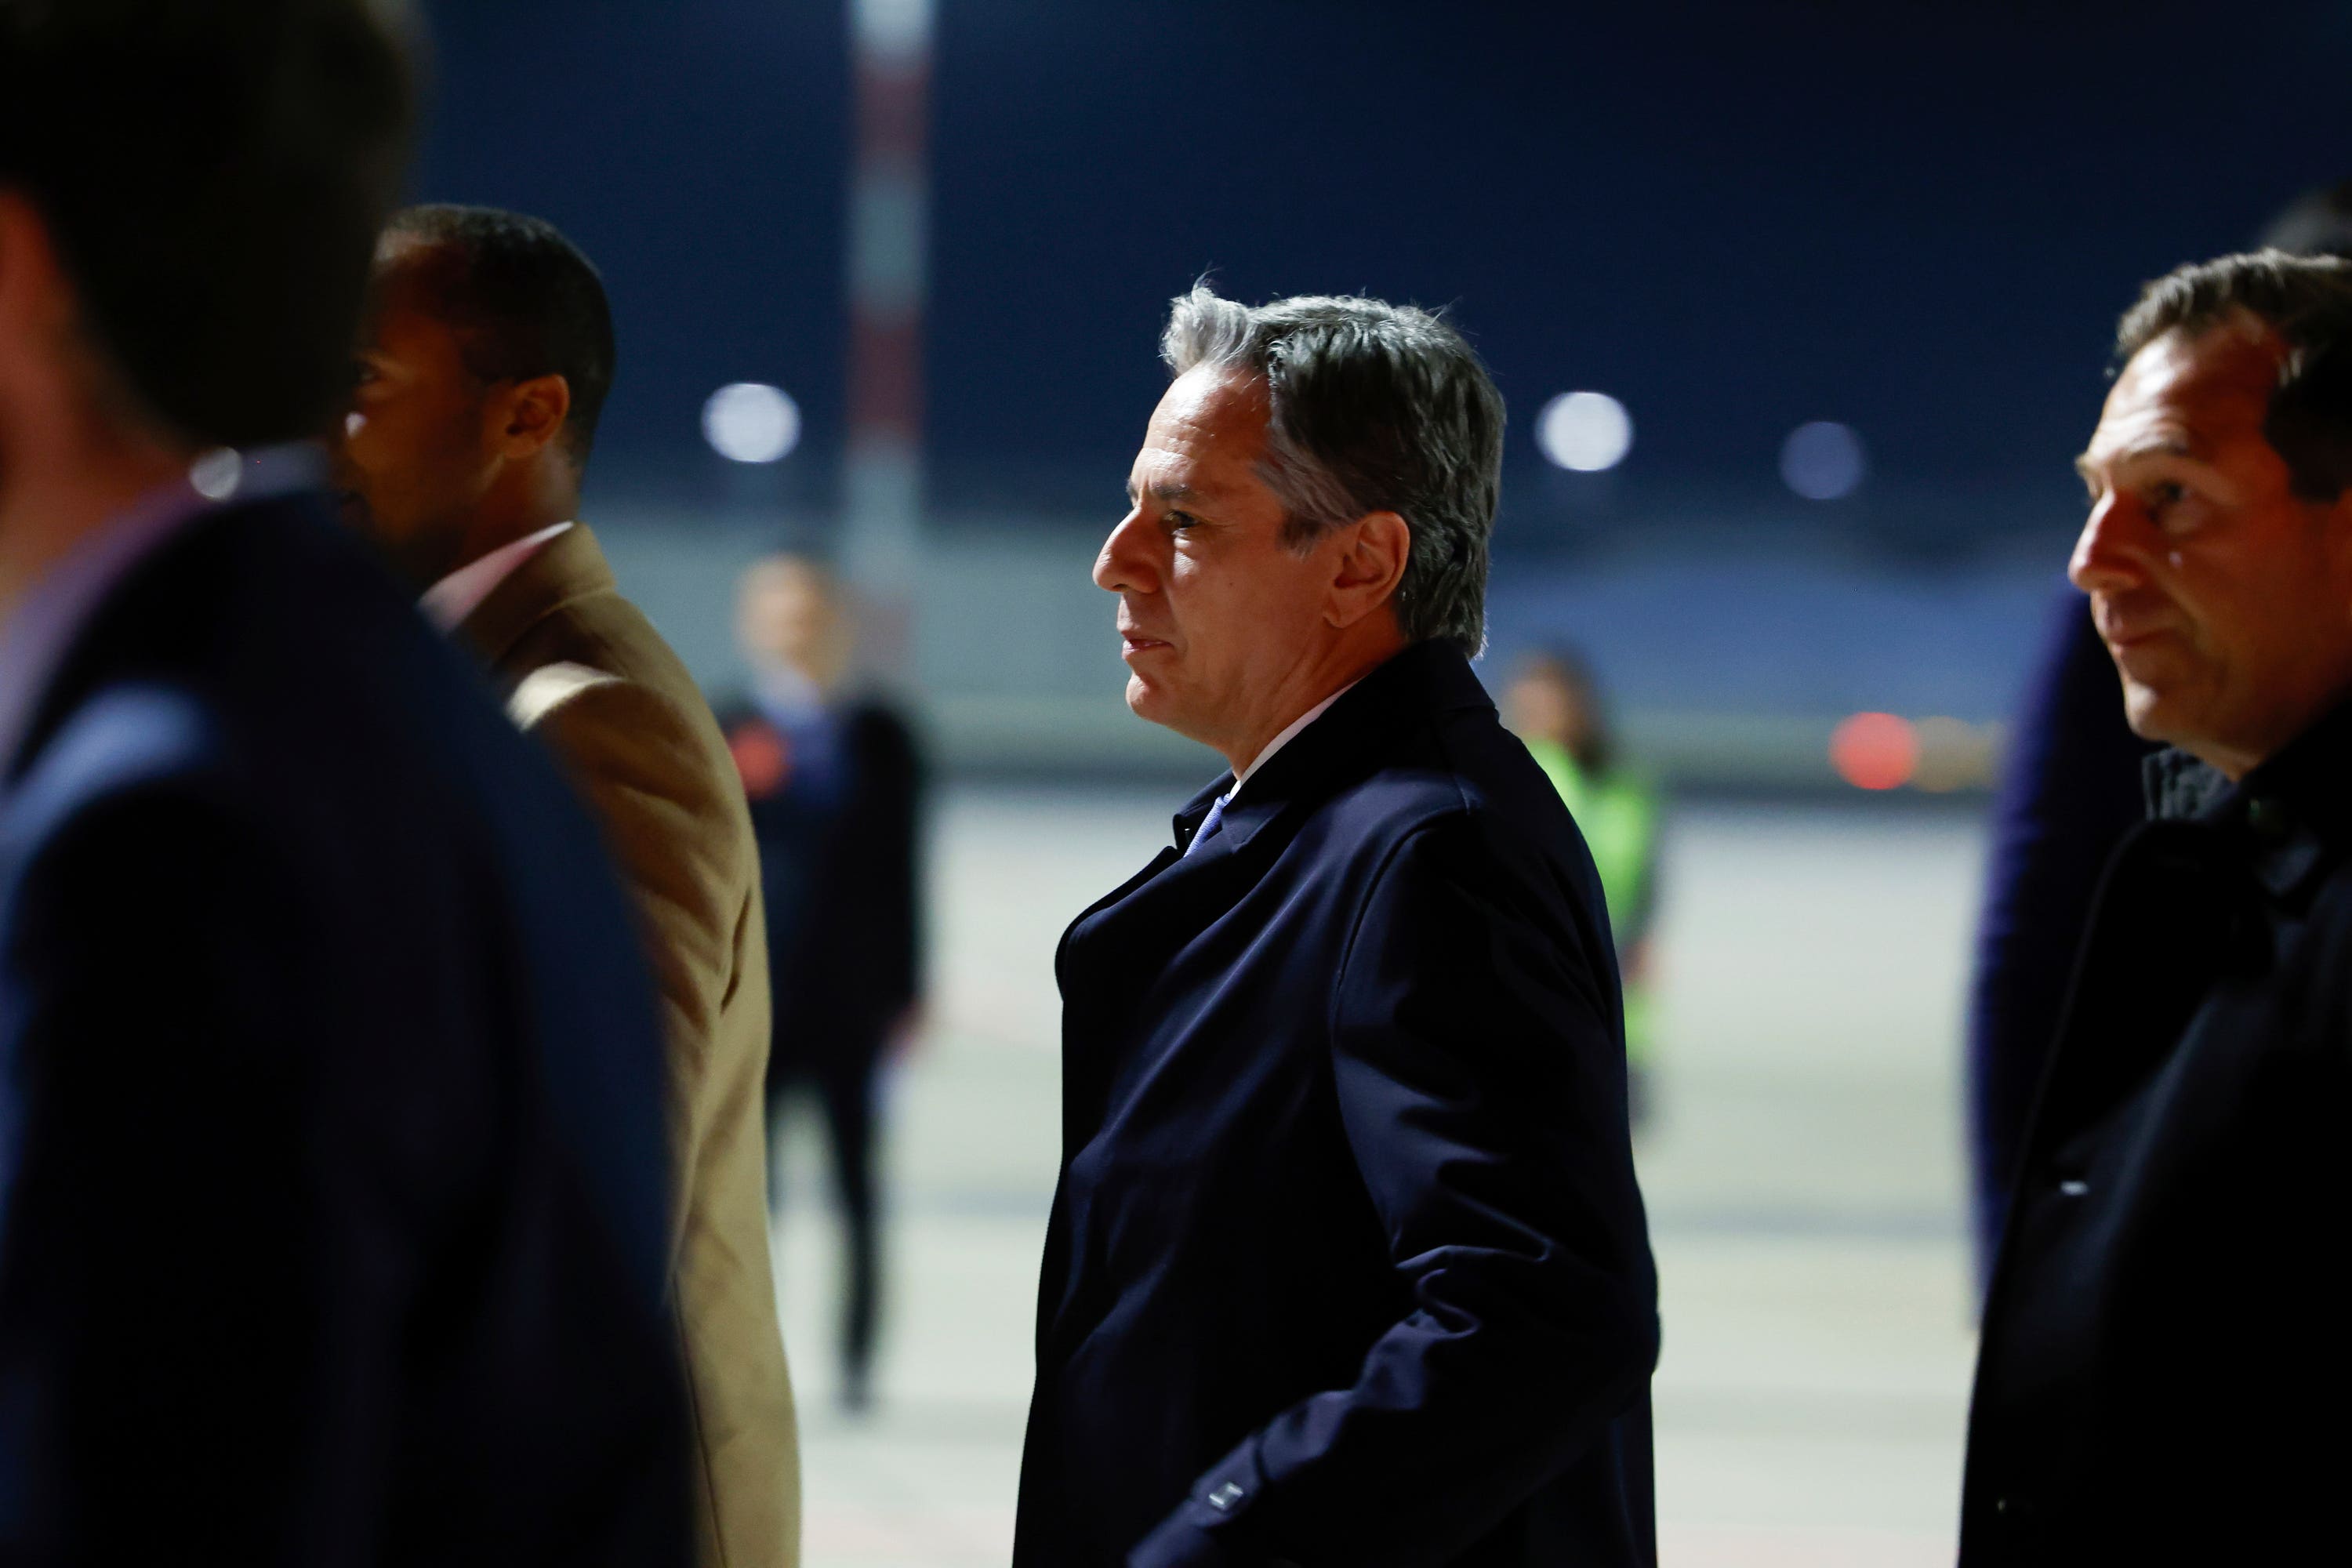 Antony Blinken arrives in Istanbul.